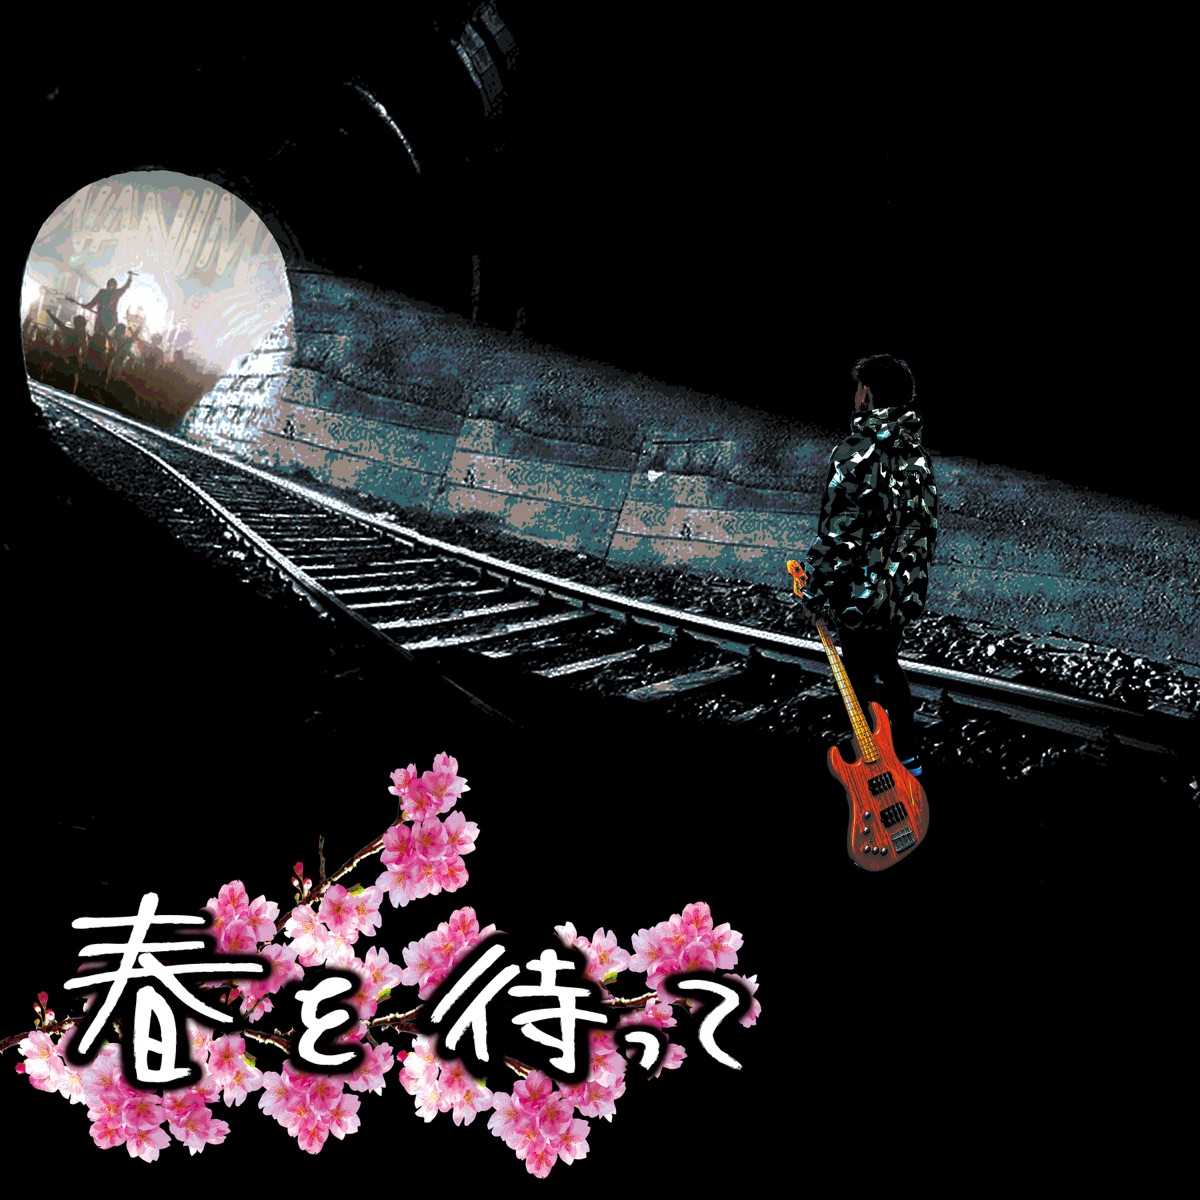 Cover art for『WANIMA - Haru wo Matte』from the release『Haru wo Matte』